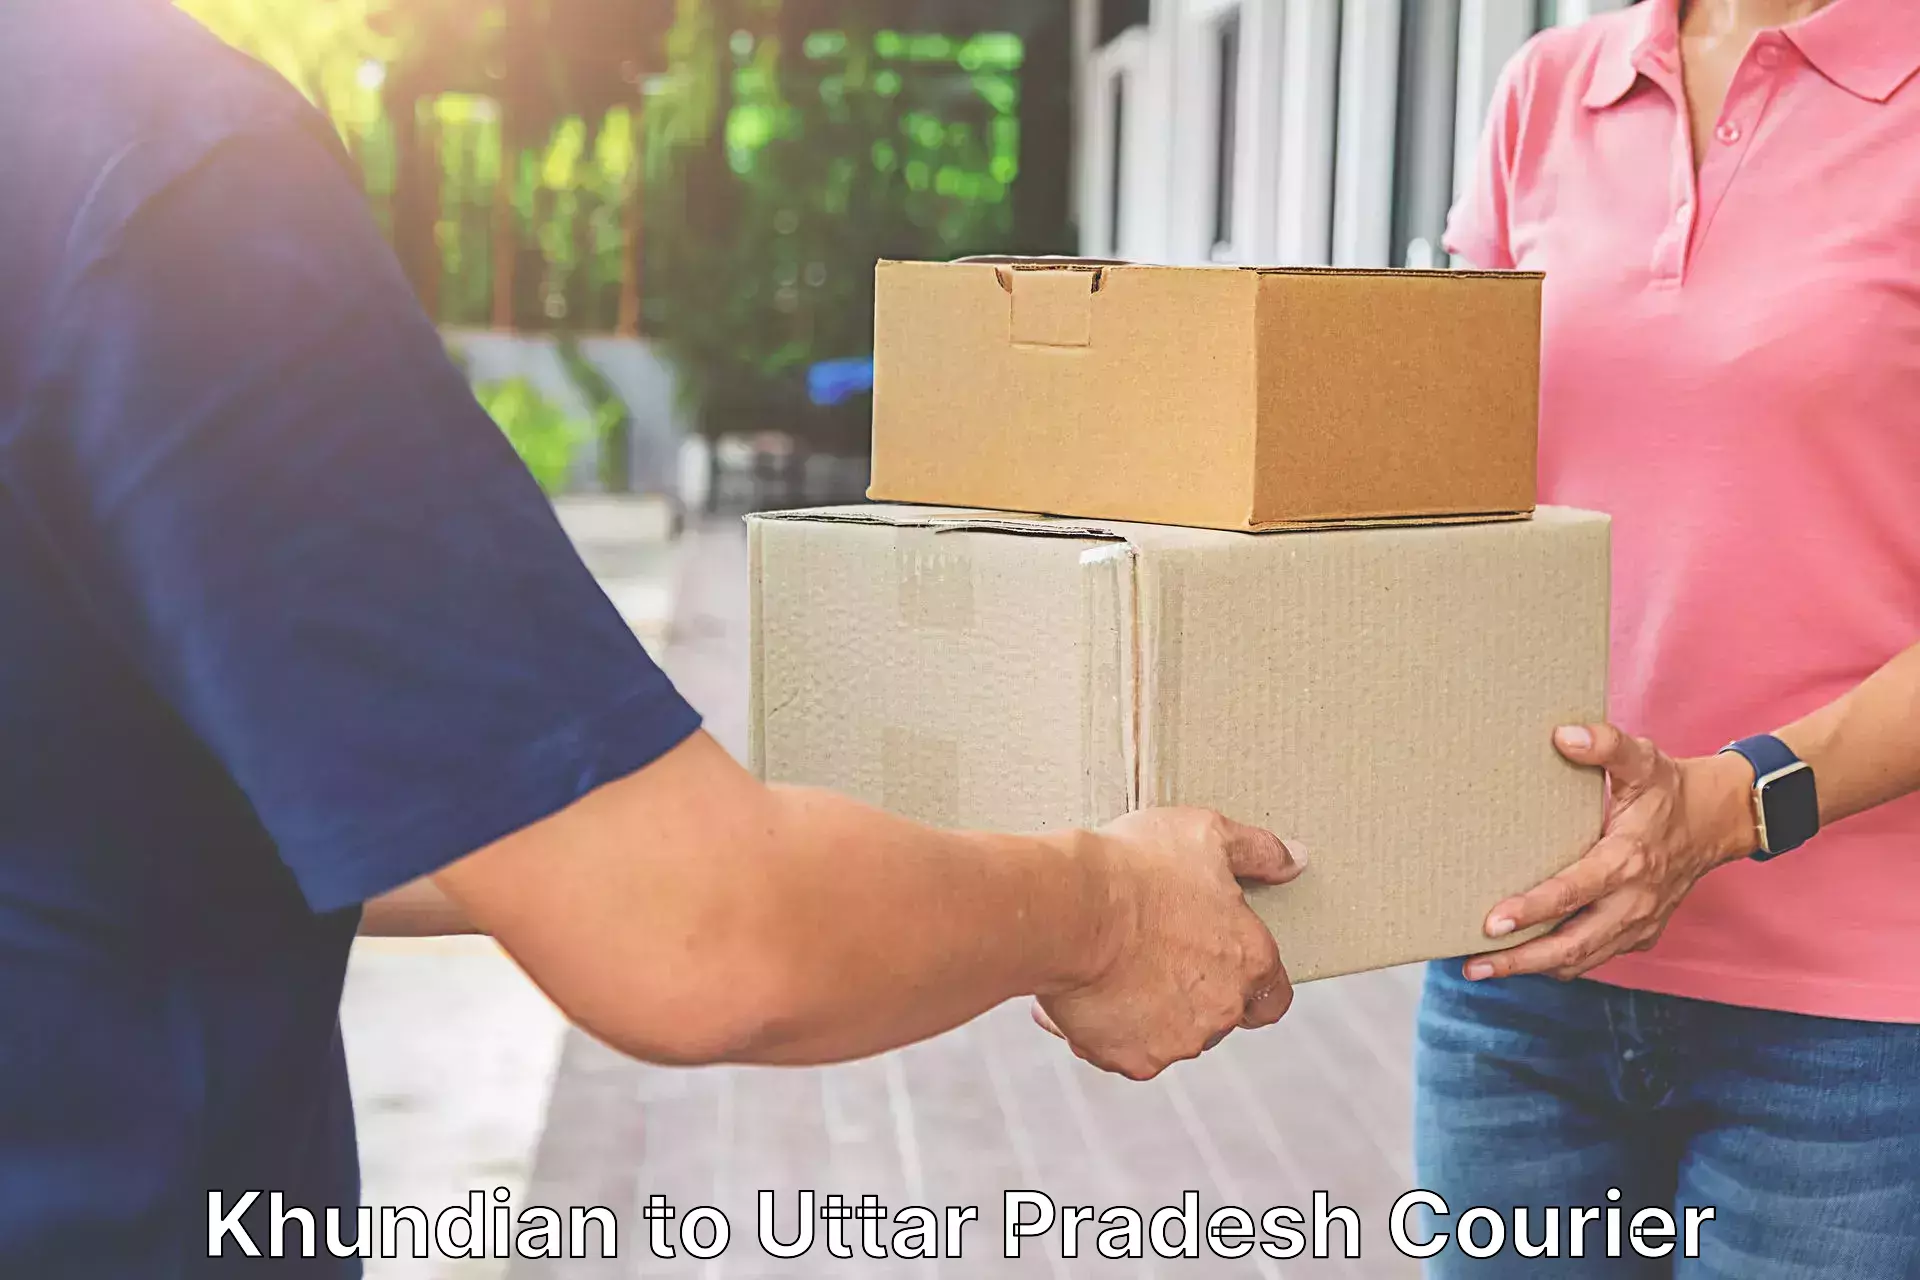 Versatile courier options Khundian to Aunrihar